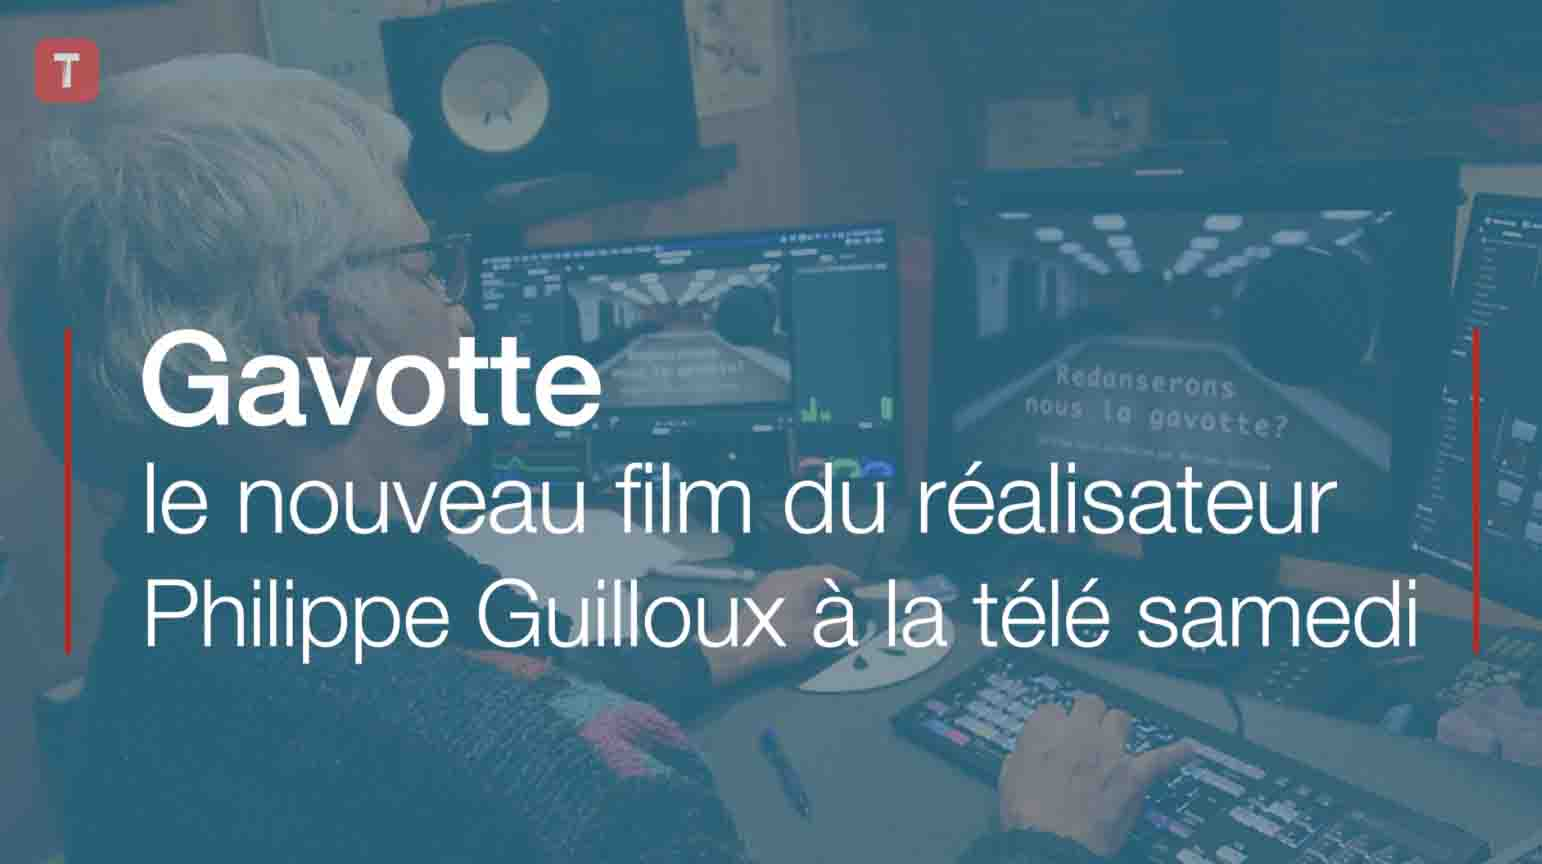 Gavotte : le nouveau film du réalisateur Philippe Guilloux à la télé samedi (Le Télégramme)